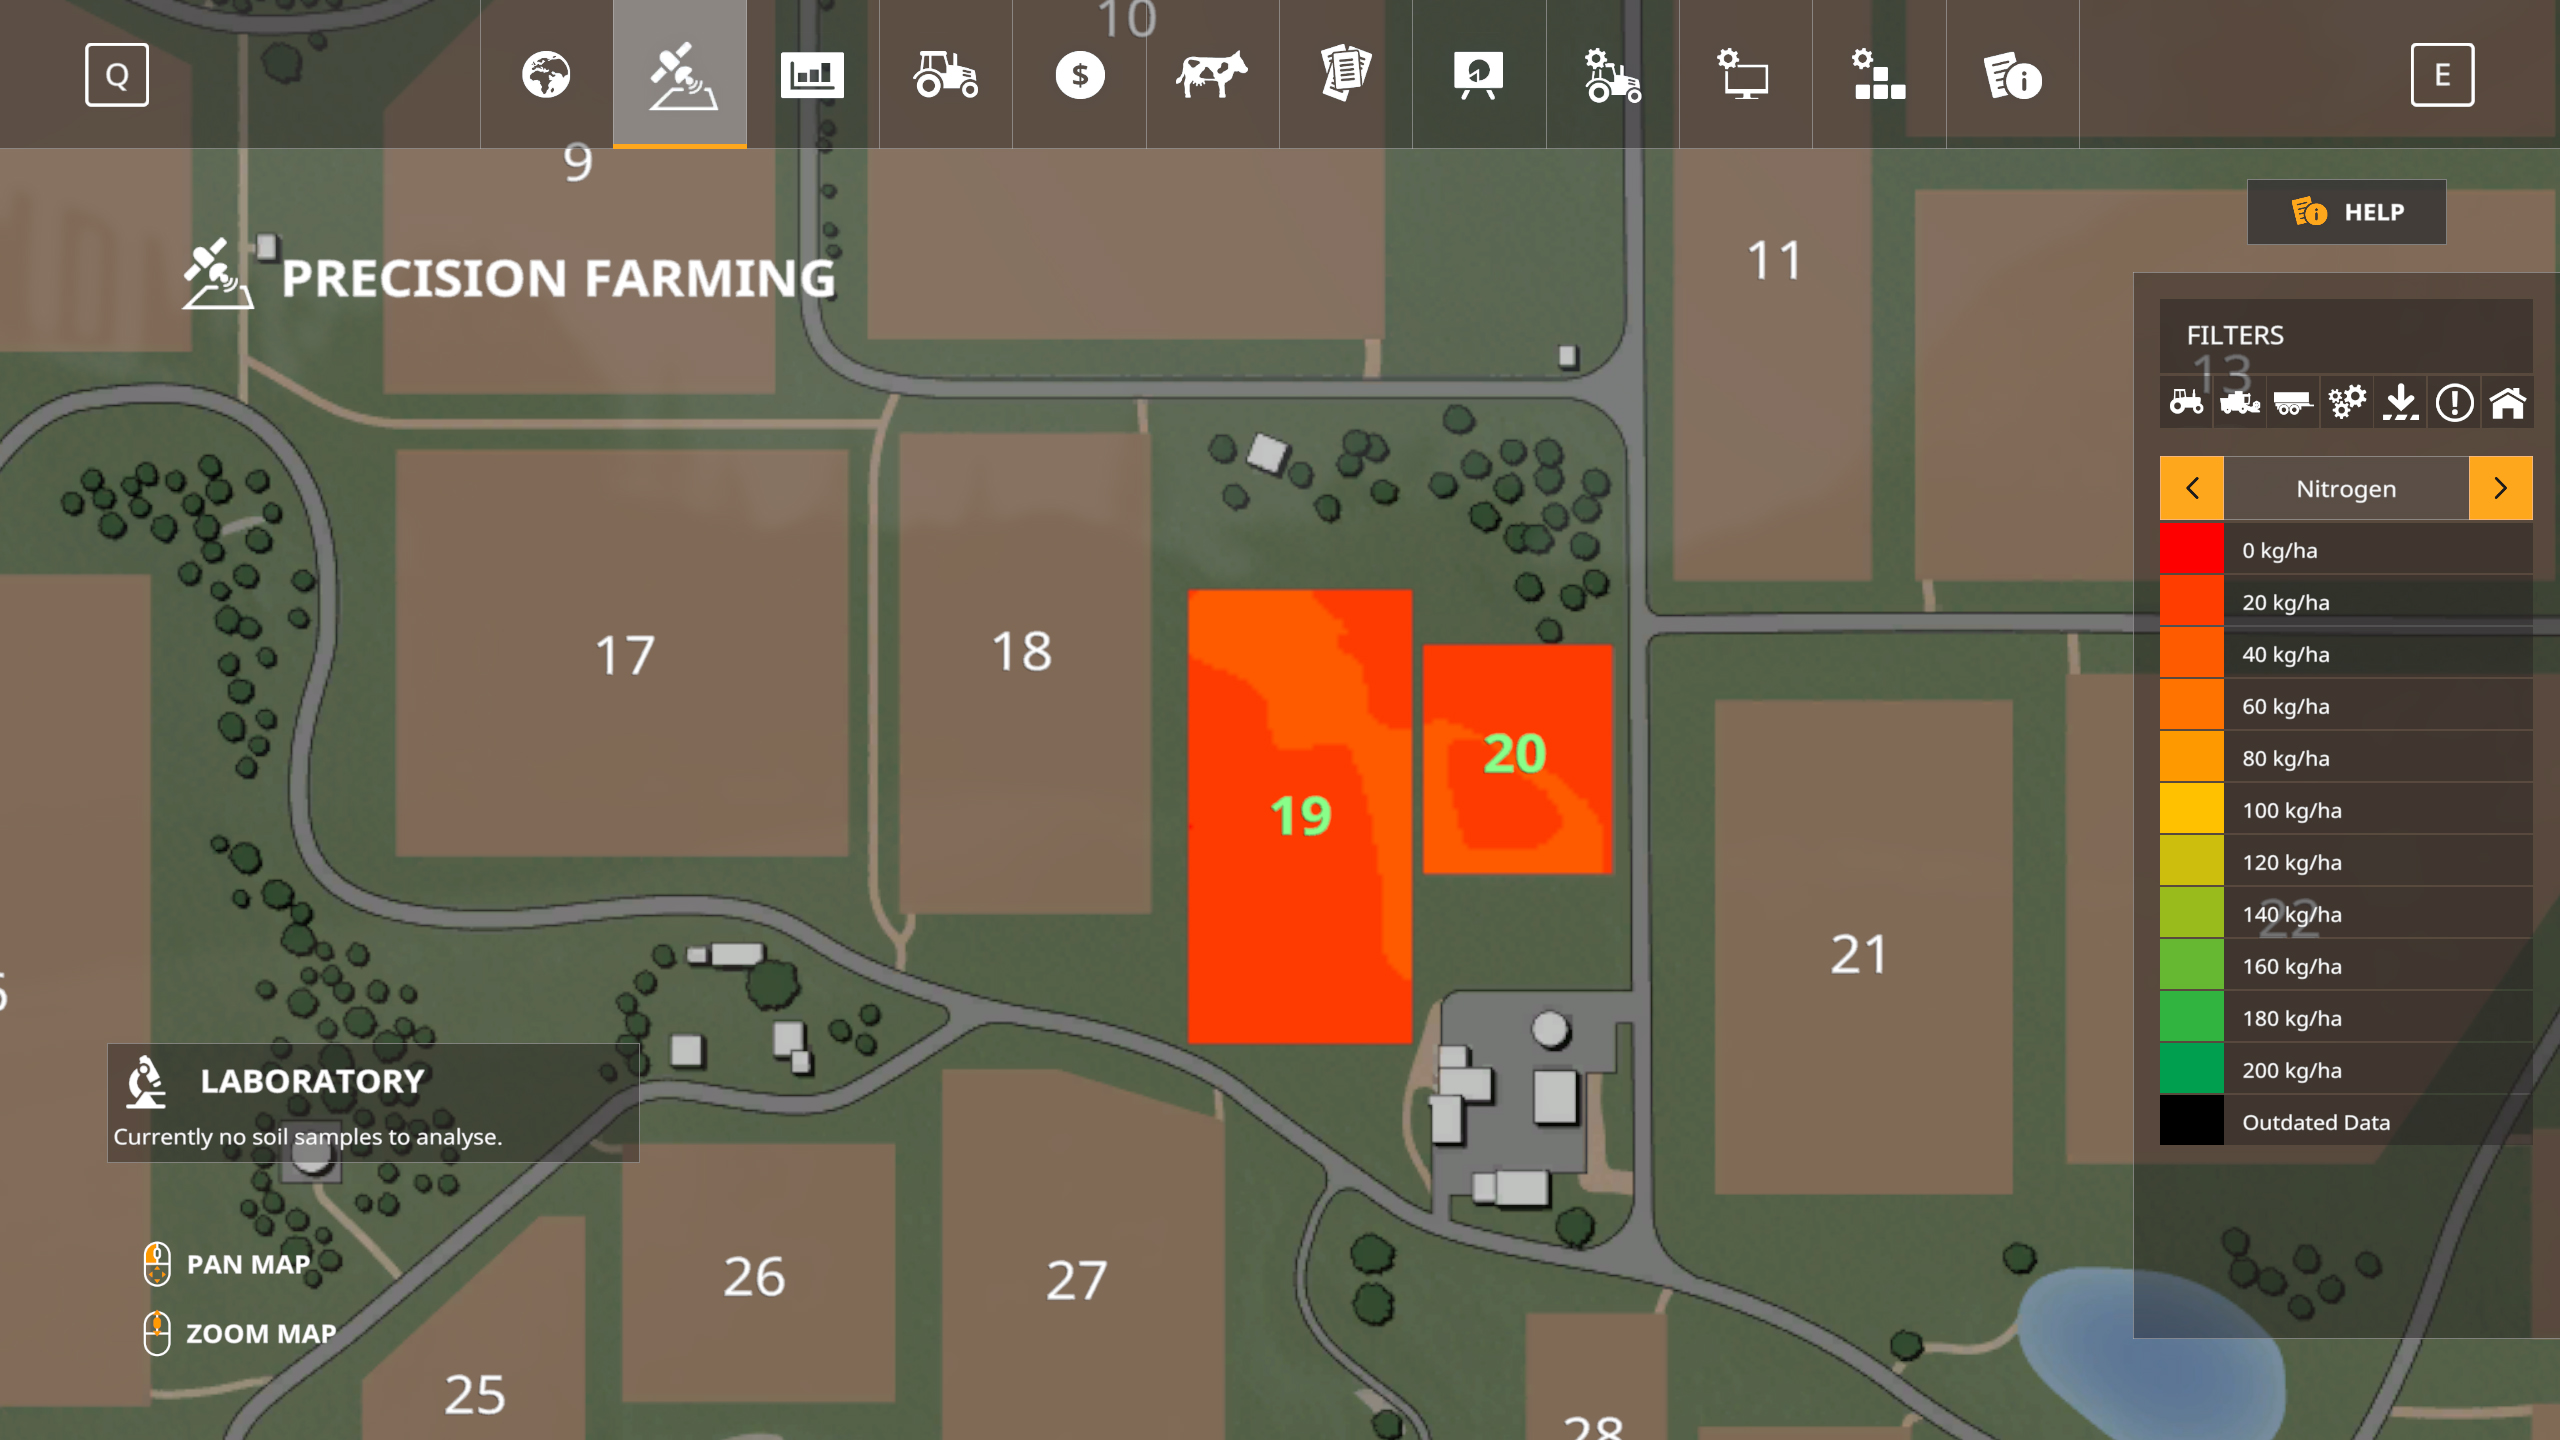 Análise: Farming Simulator 18, ou a pausa da cidade